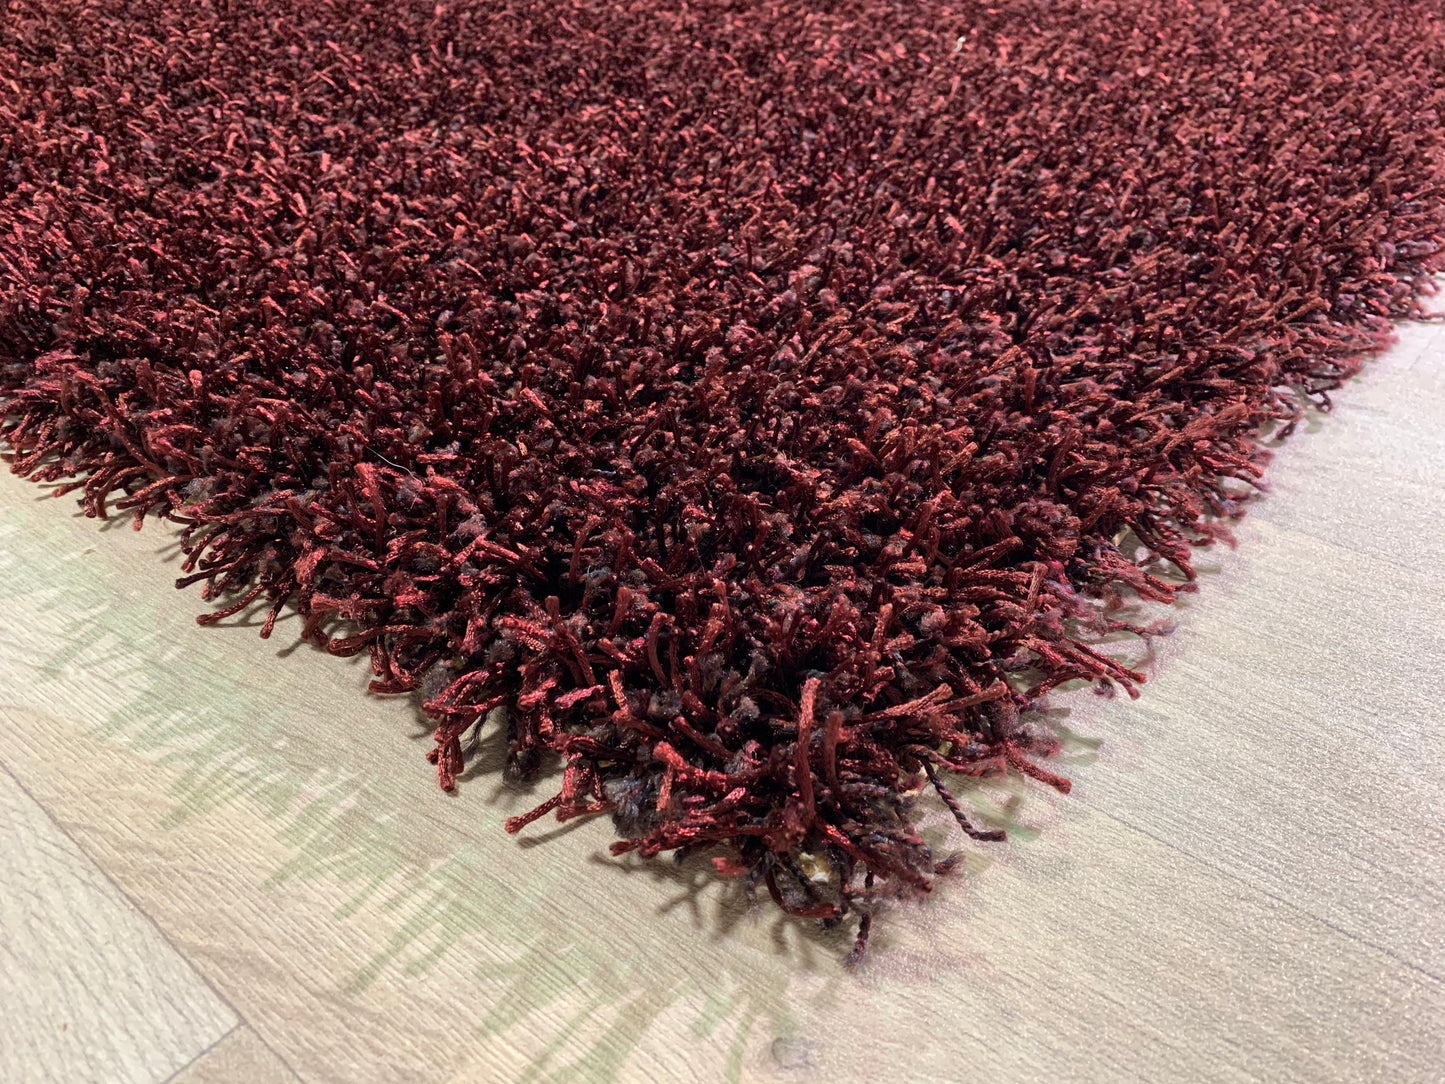 Burgundy "shag" type rug